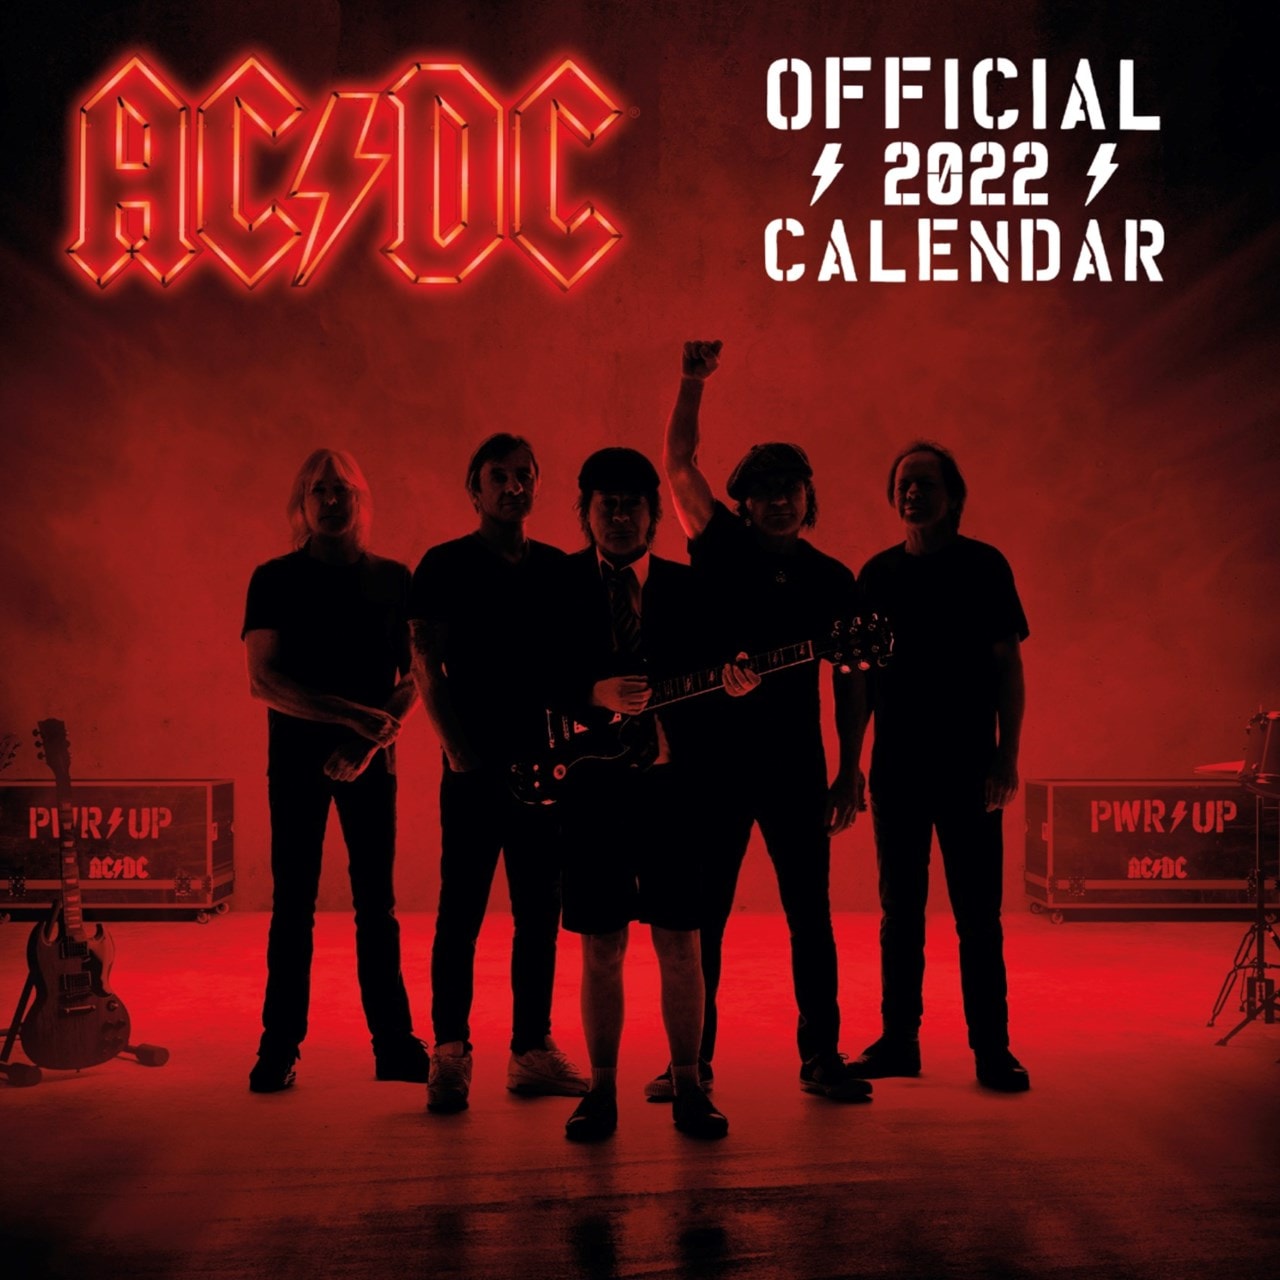 AC/DC Square 2022 Calendar Calendars Free shipping over £20 HMV